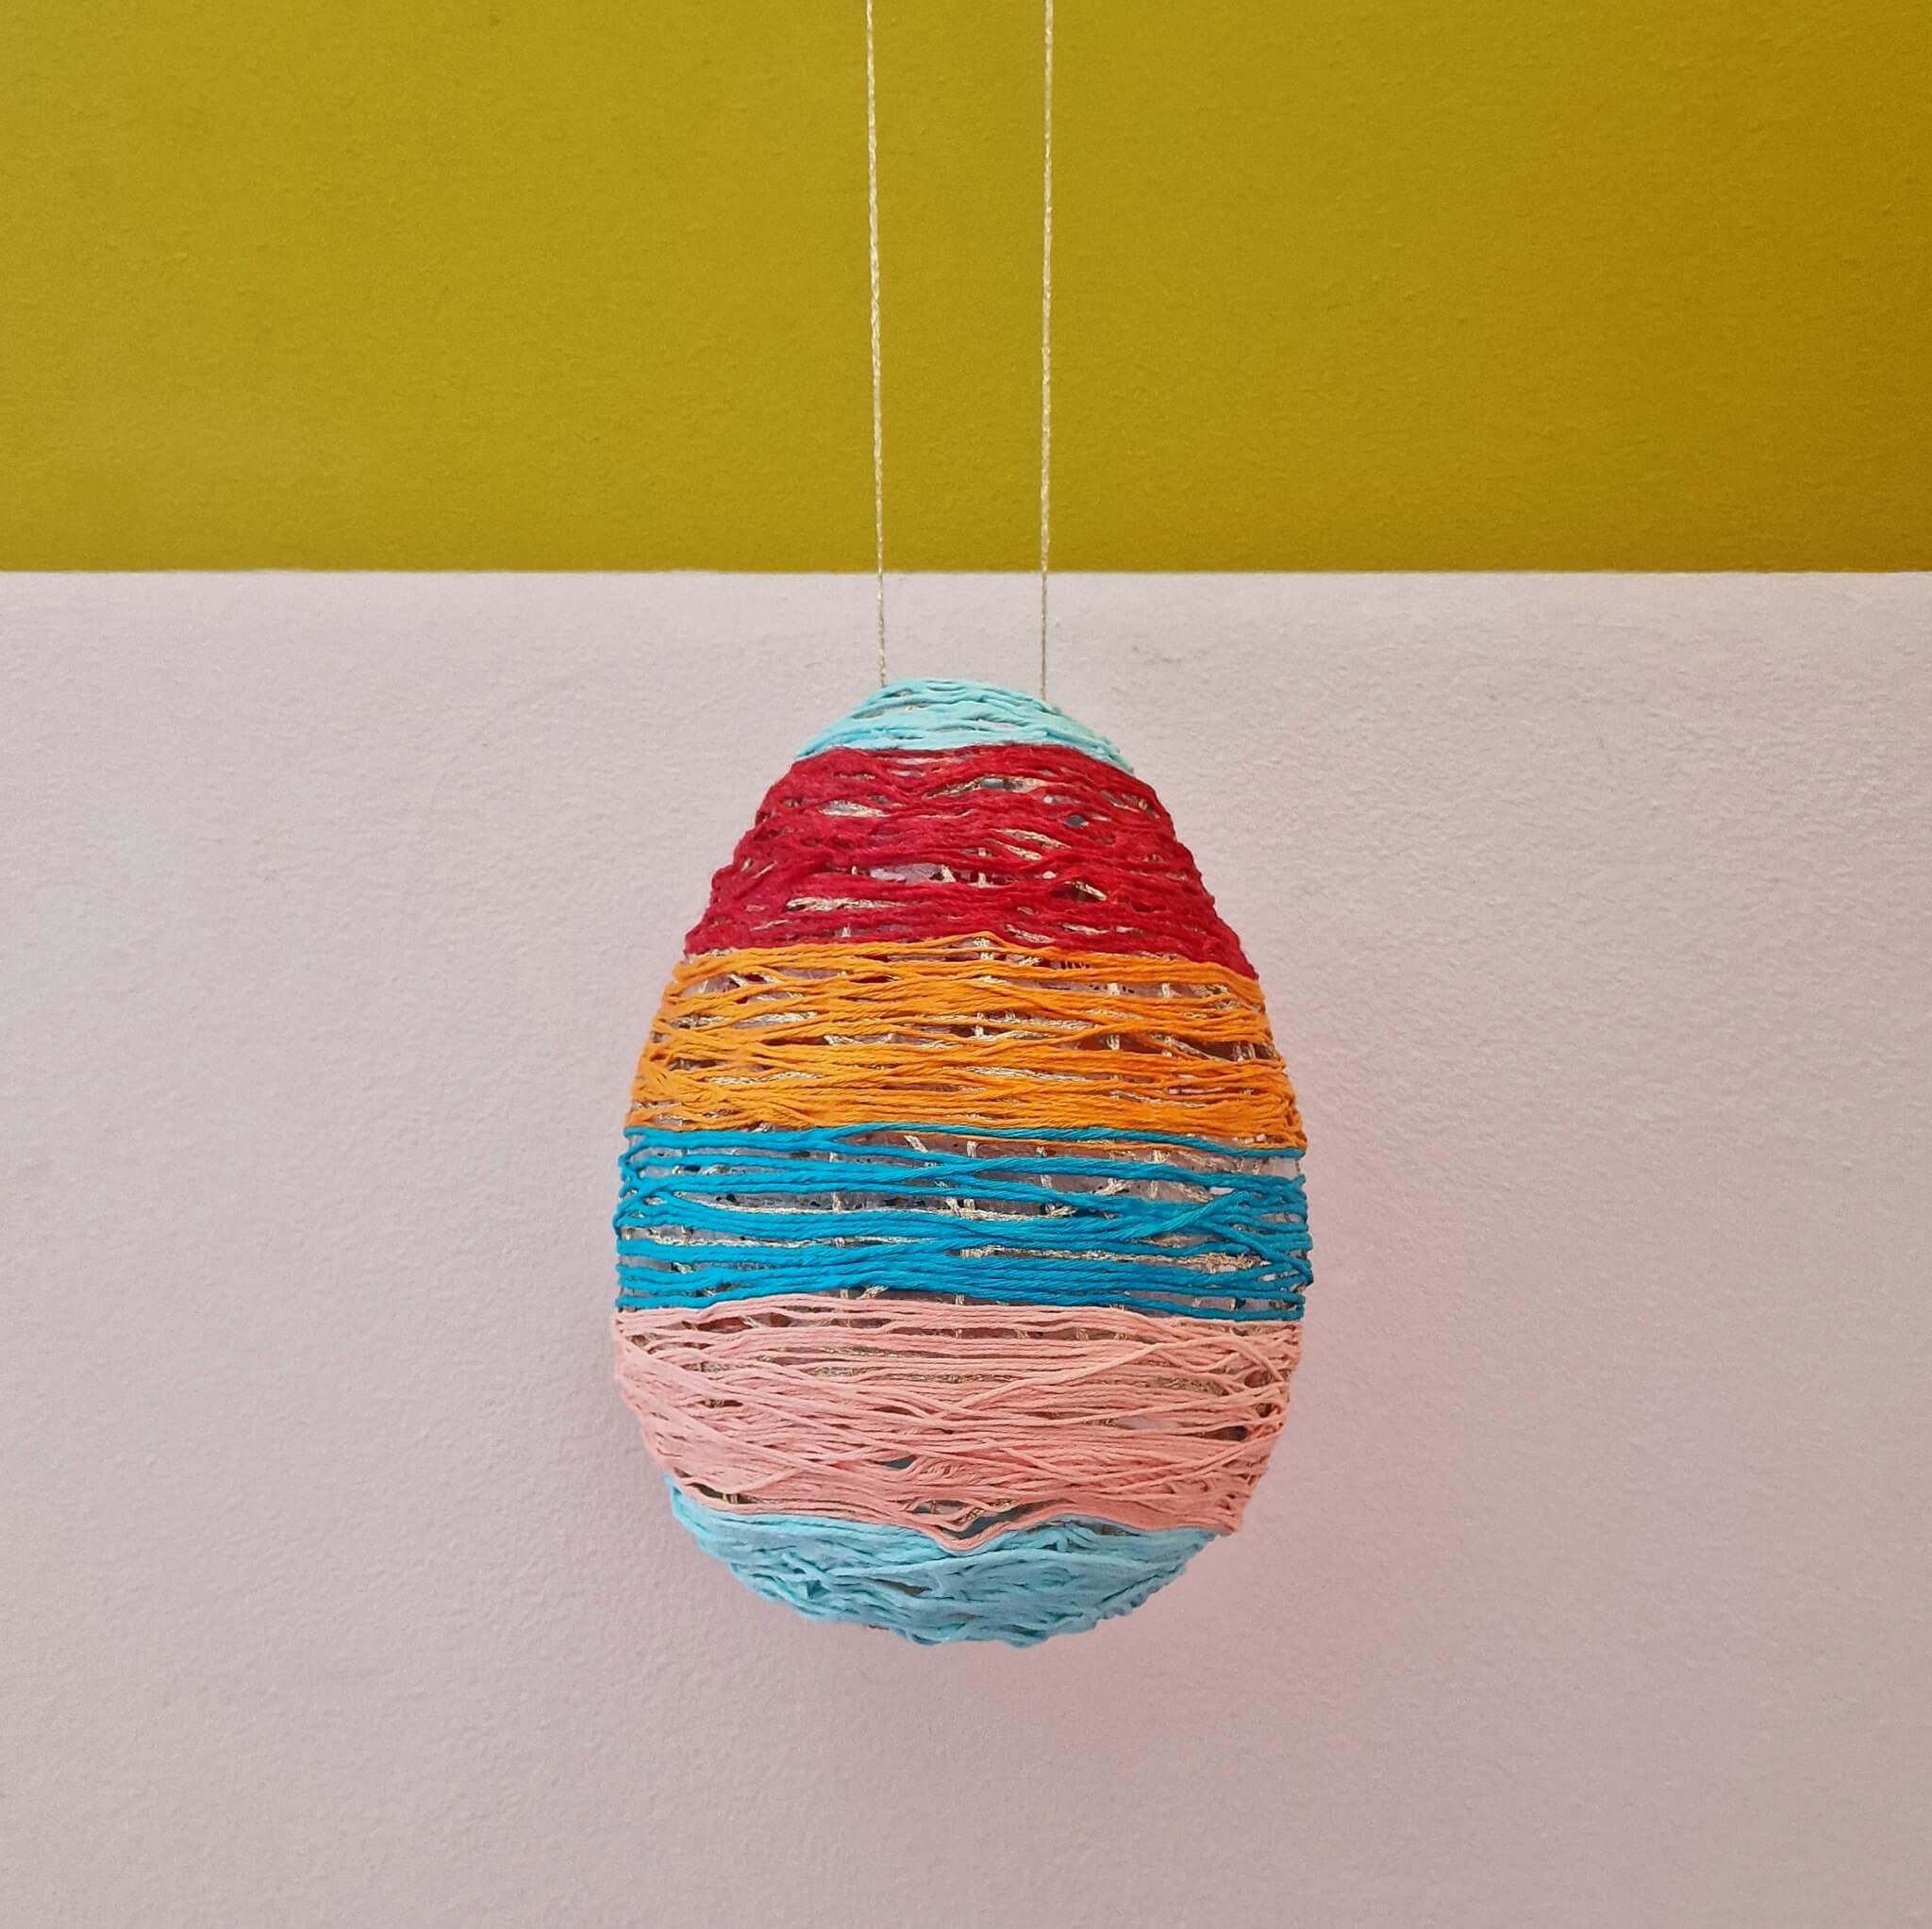 Knutselen voor Pasen: leuke ideeën met kinderen. Dit paasei kun je maken van een ballon. Leuk als decoratie voor Pasen in het raam of op de muur. 